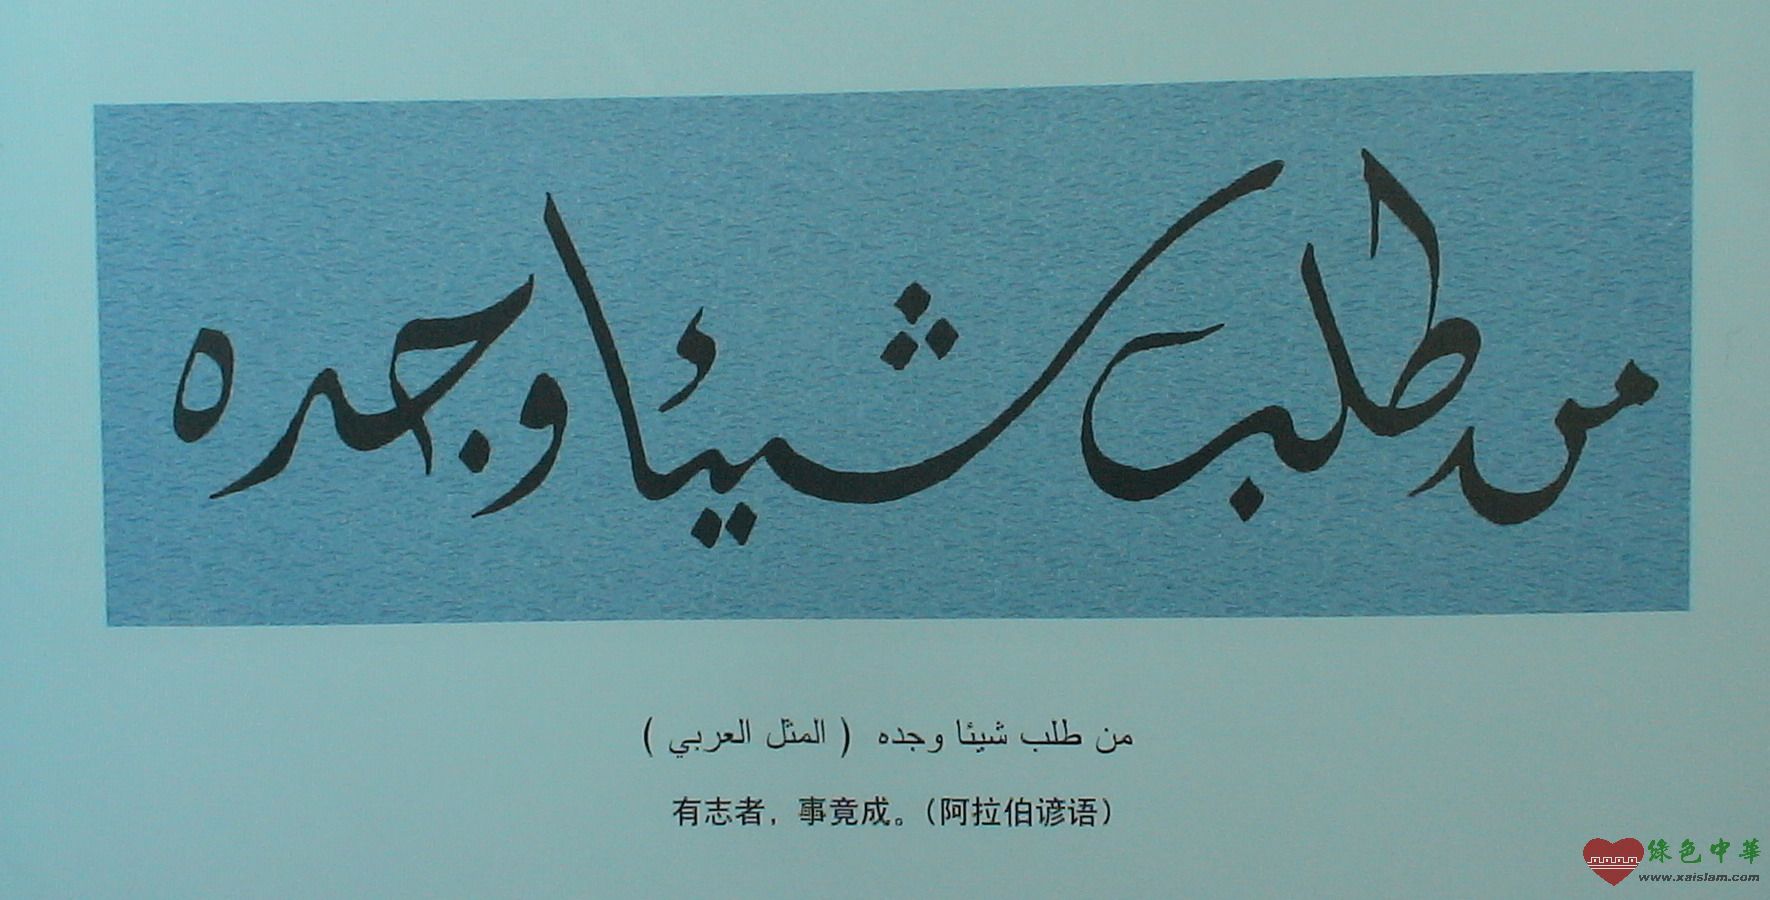 钟育翻译提供阿拉伯语和希伯来语翻译，出口认证铭牌等翻译